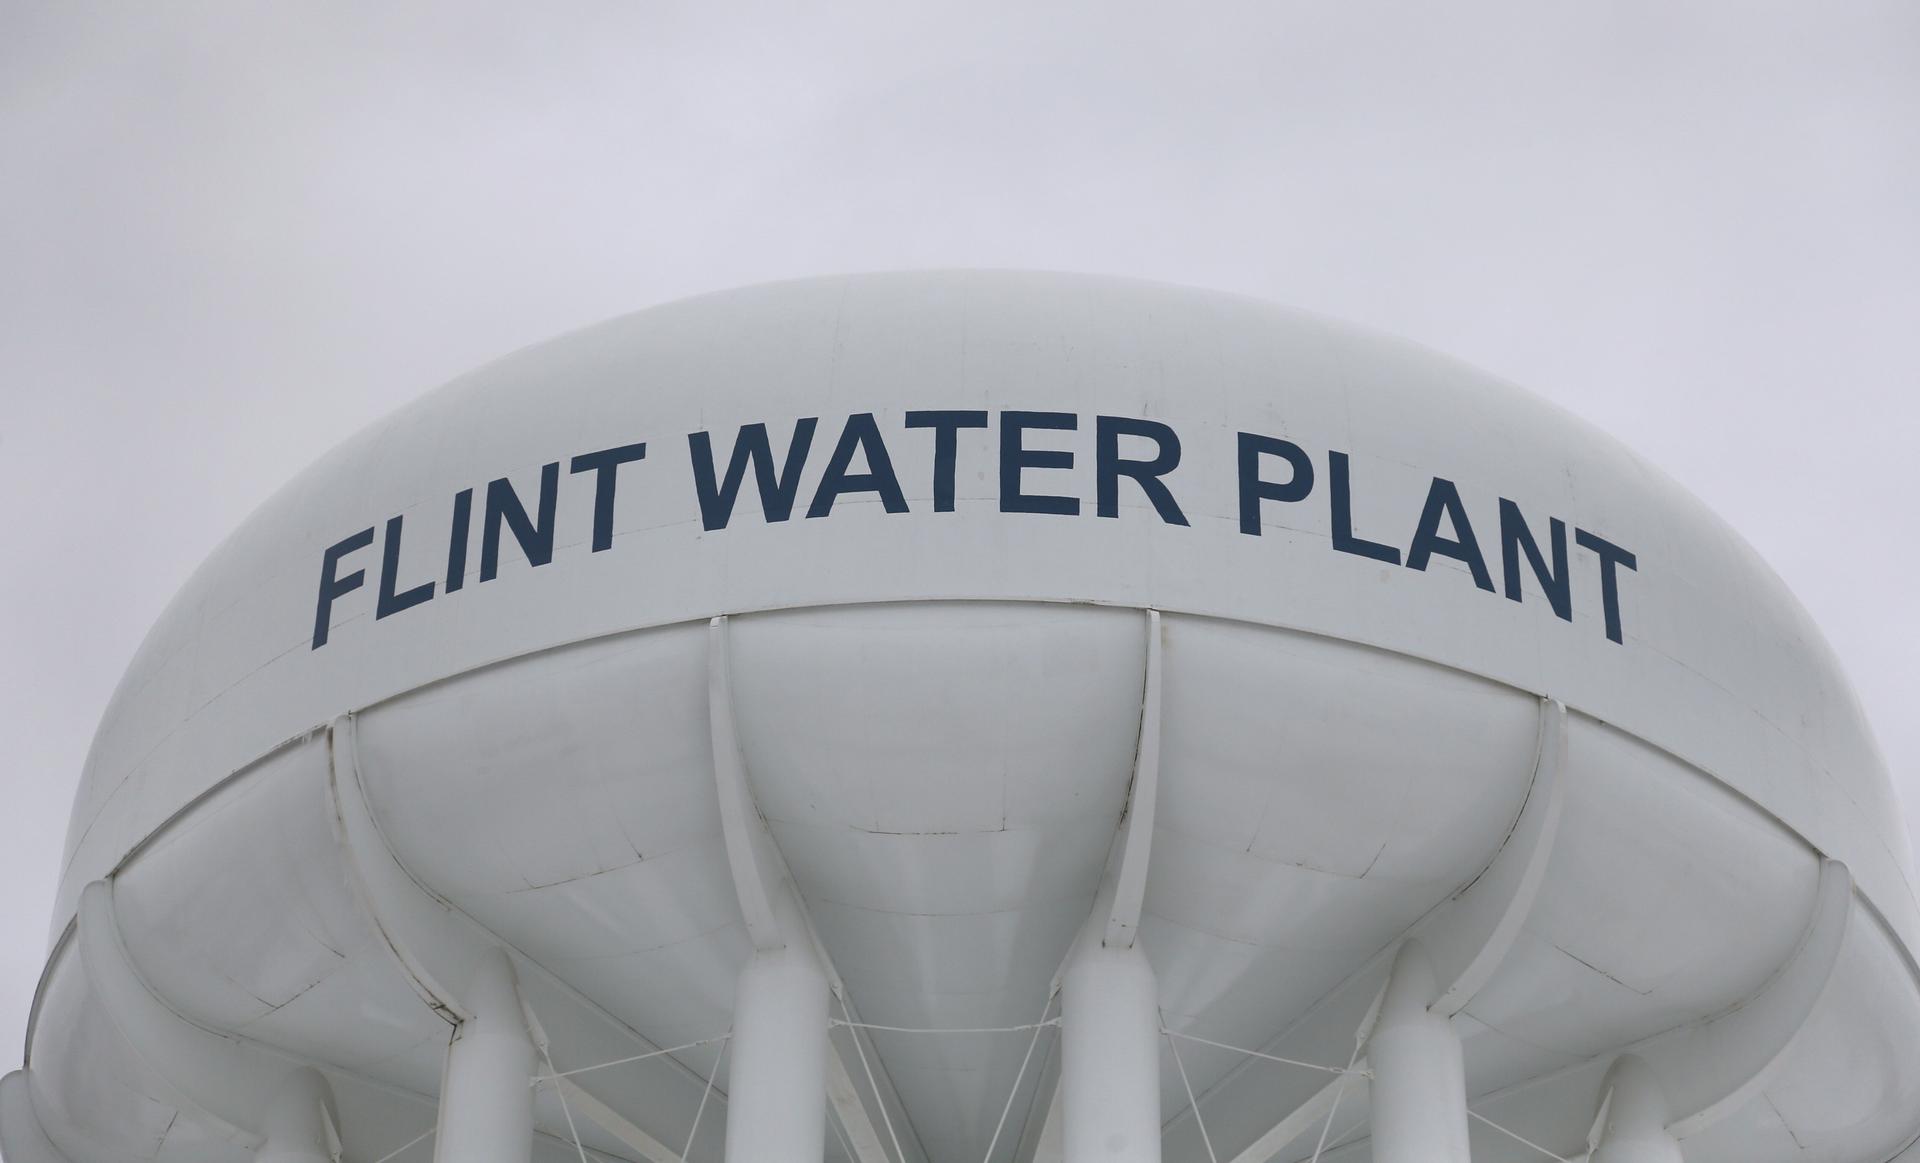 Water tower in Flint